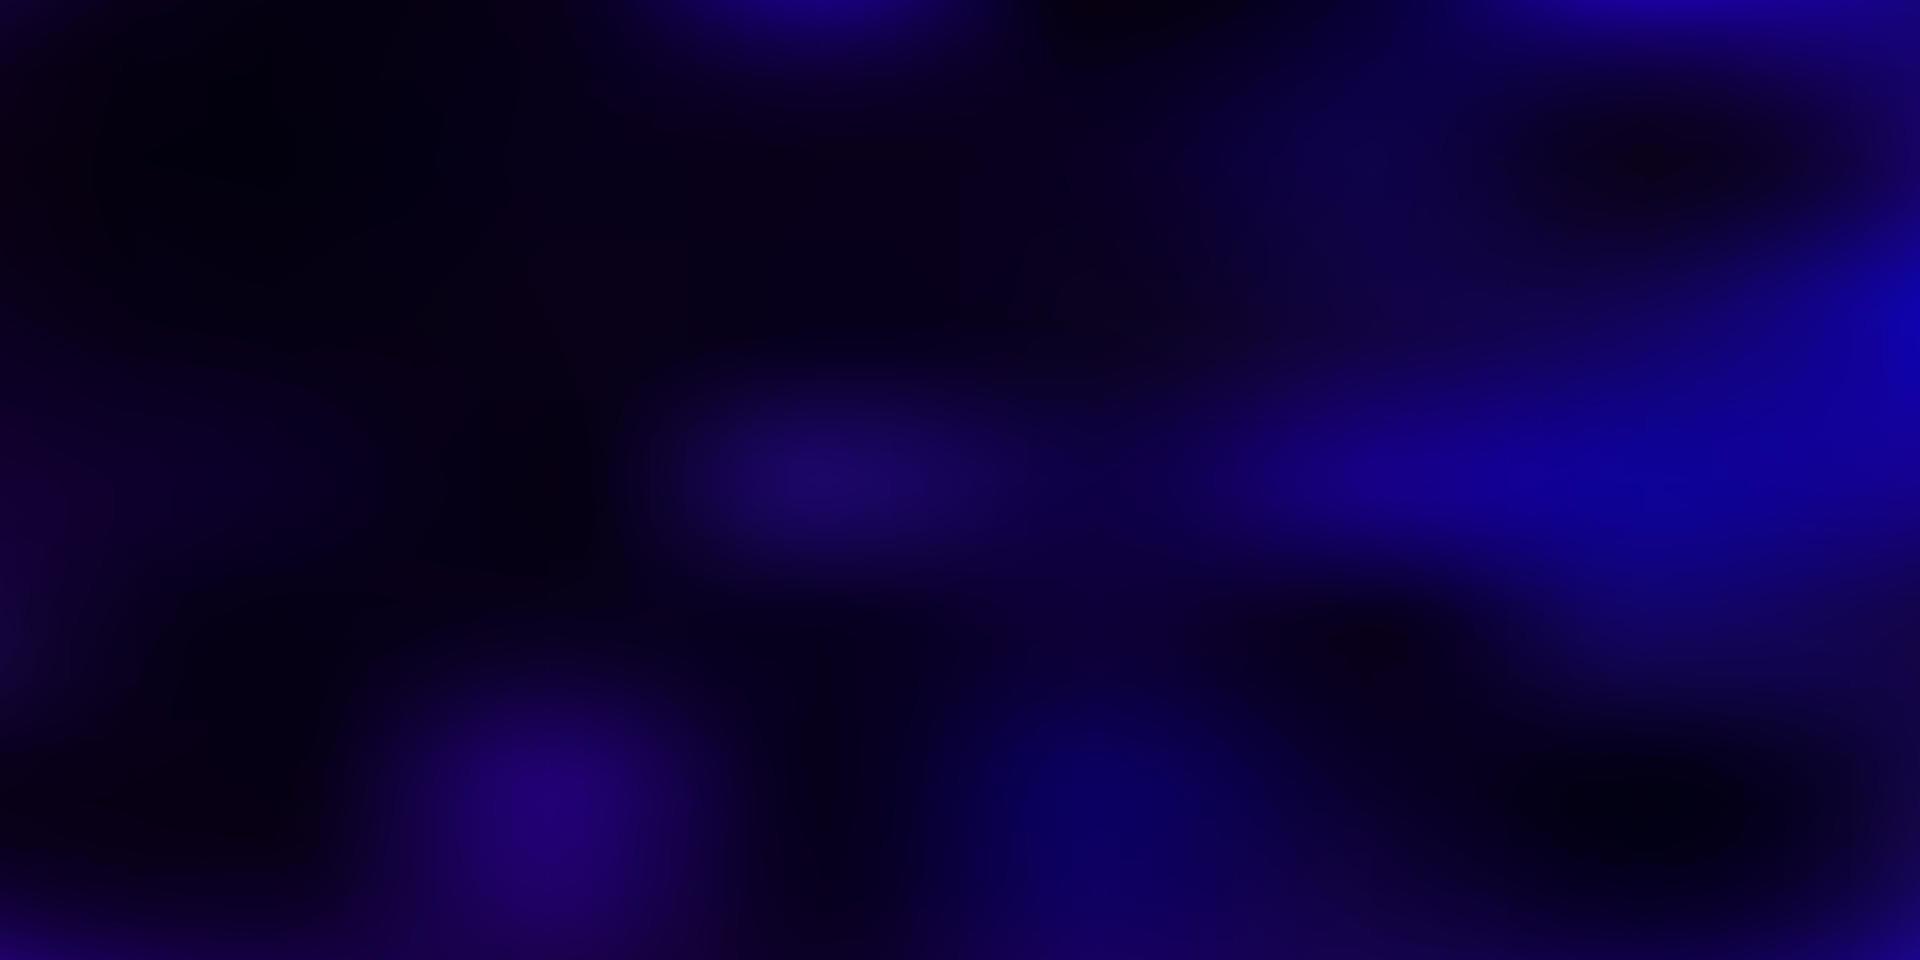 Dark purple vector gradient blur background.